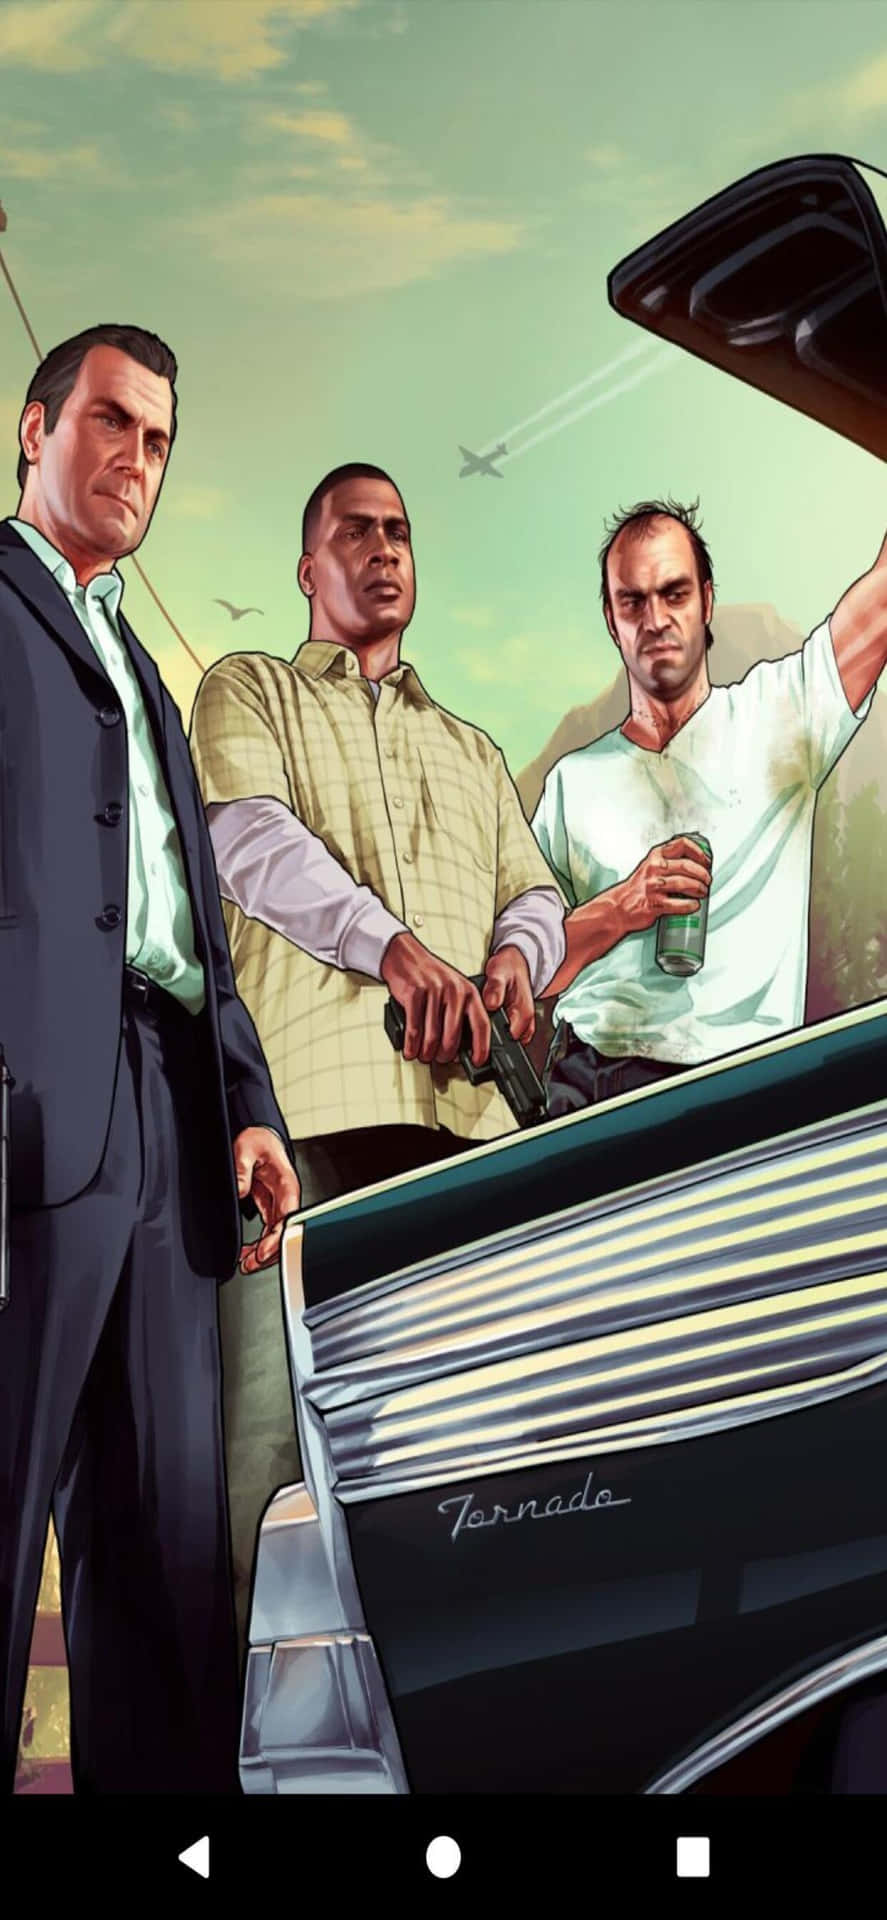 Iphonexs Max Bakgrundsbild Med Grand Theft Auto V Med Michael, Franklin Och Trevor I Bilen.